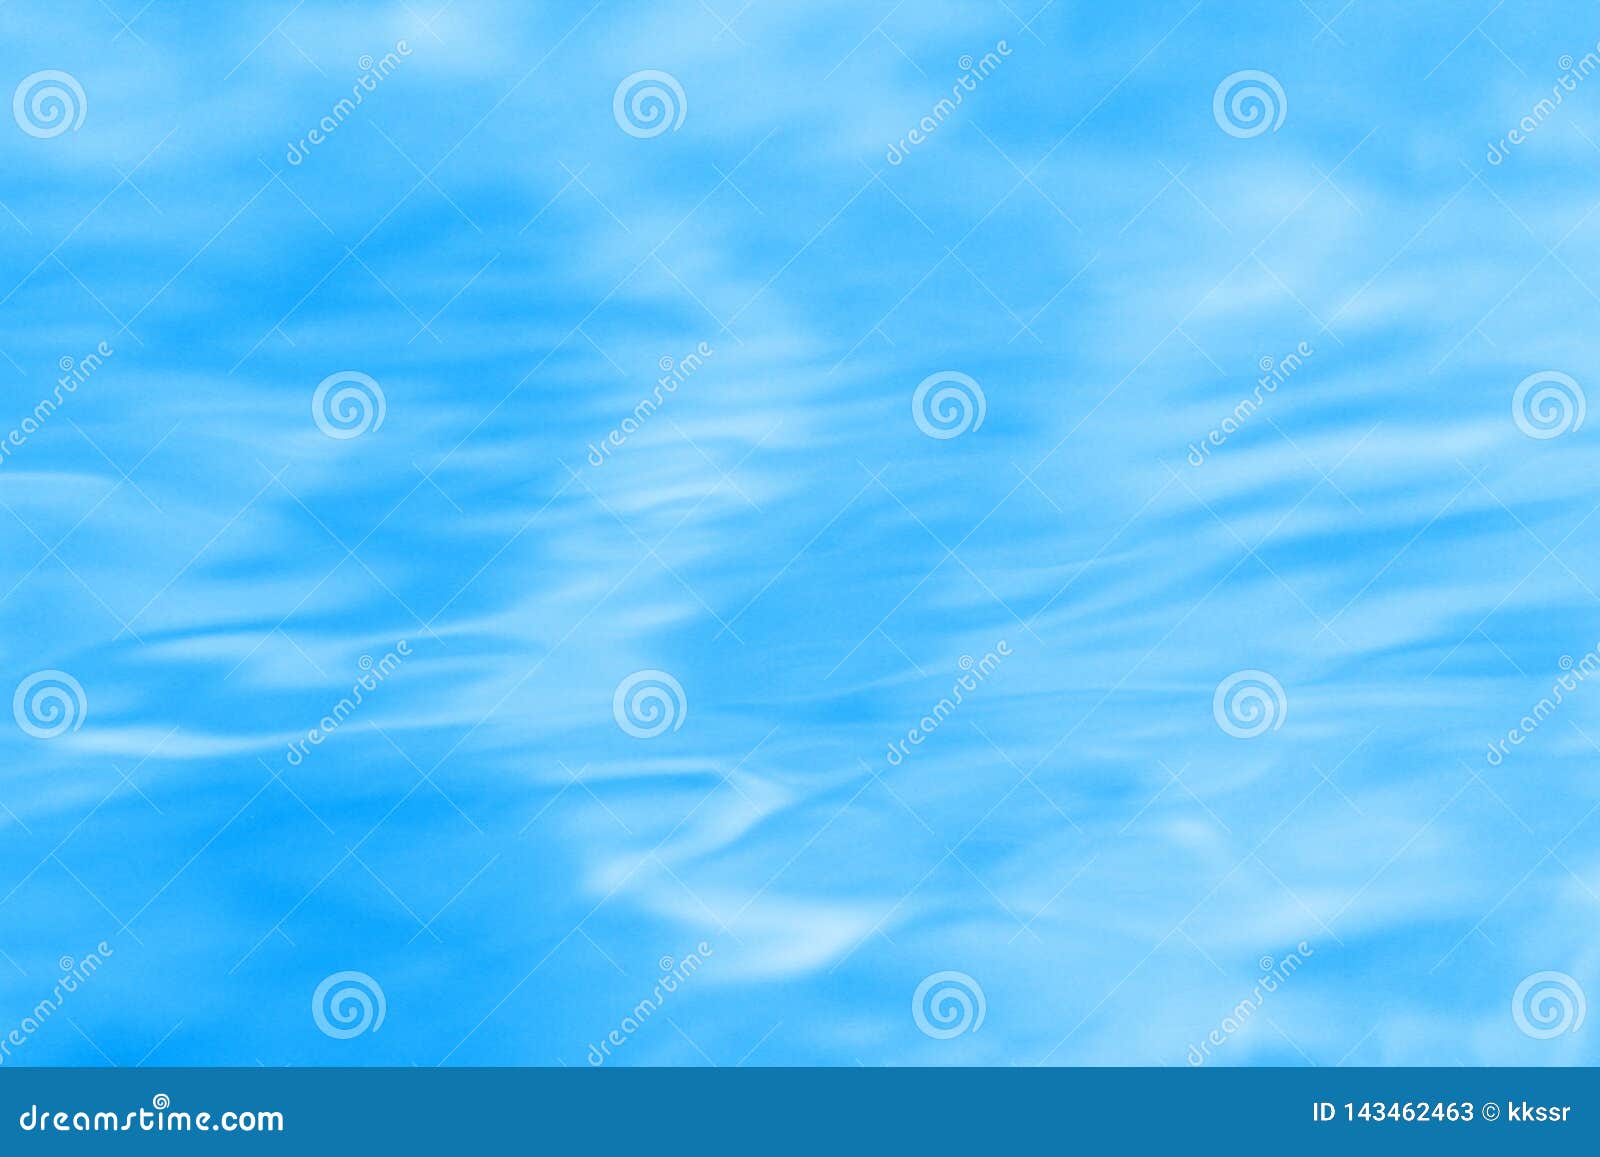 Water ripple: Sự chuyển động sóng nước tạo ra những đốm nước lấp lánh tuyệt đẹp trên bề mặt. Hãy cùng điểm qua bức ảnh với hiệu ứng Water ripple để trải nghiệm cảm giác đó một cách lãng mạn và thú vị.